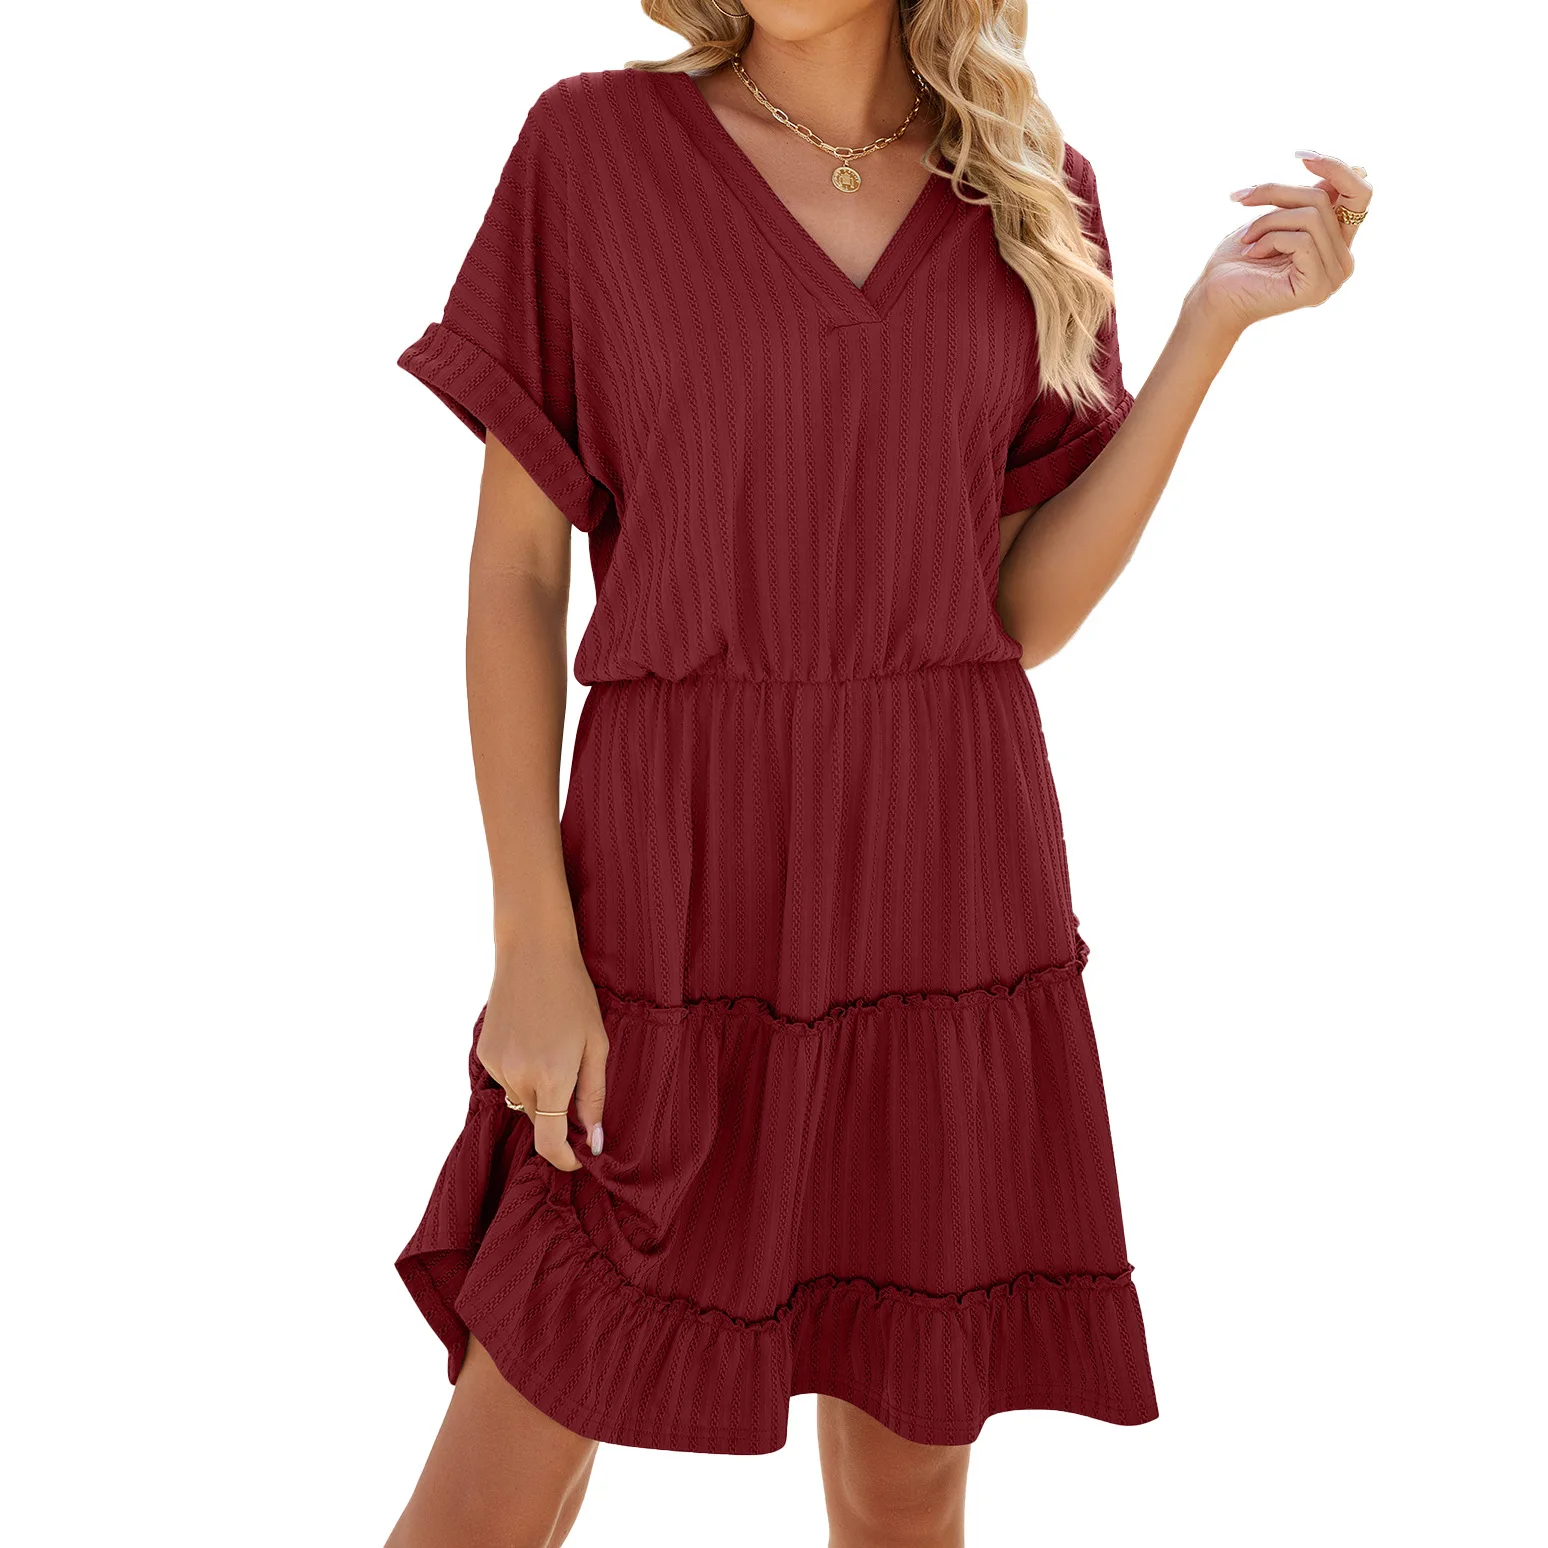 

Women's Spring/Summer Solid Color V-Neck Loose Short Sleeve Spliced Dress